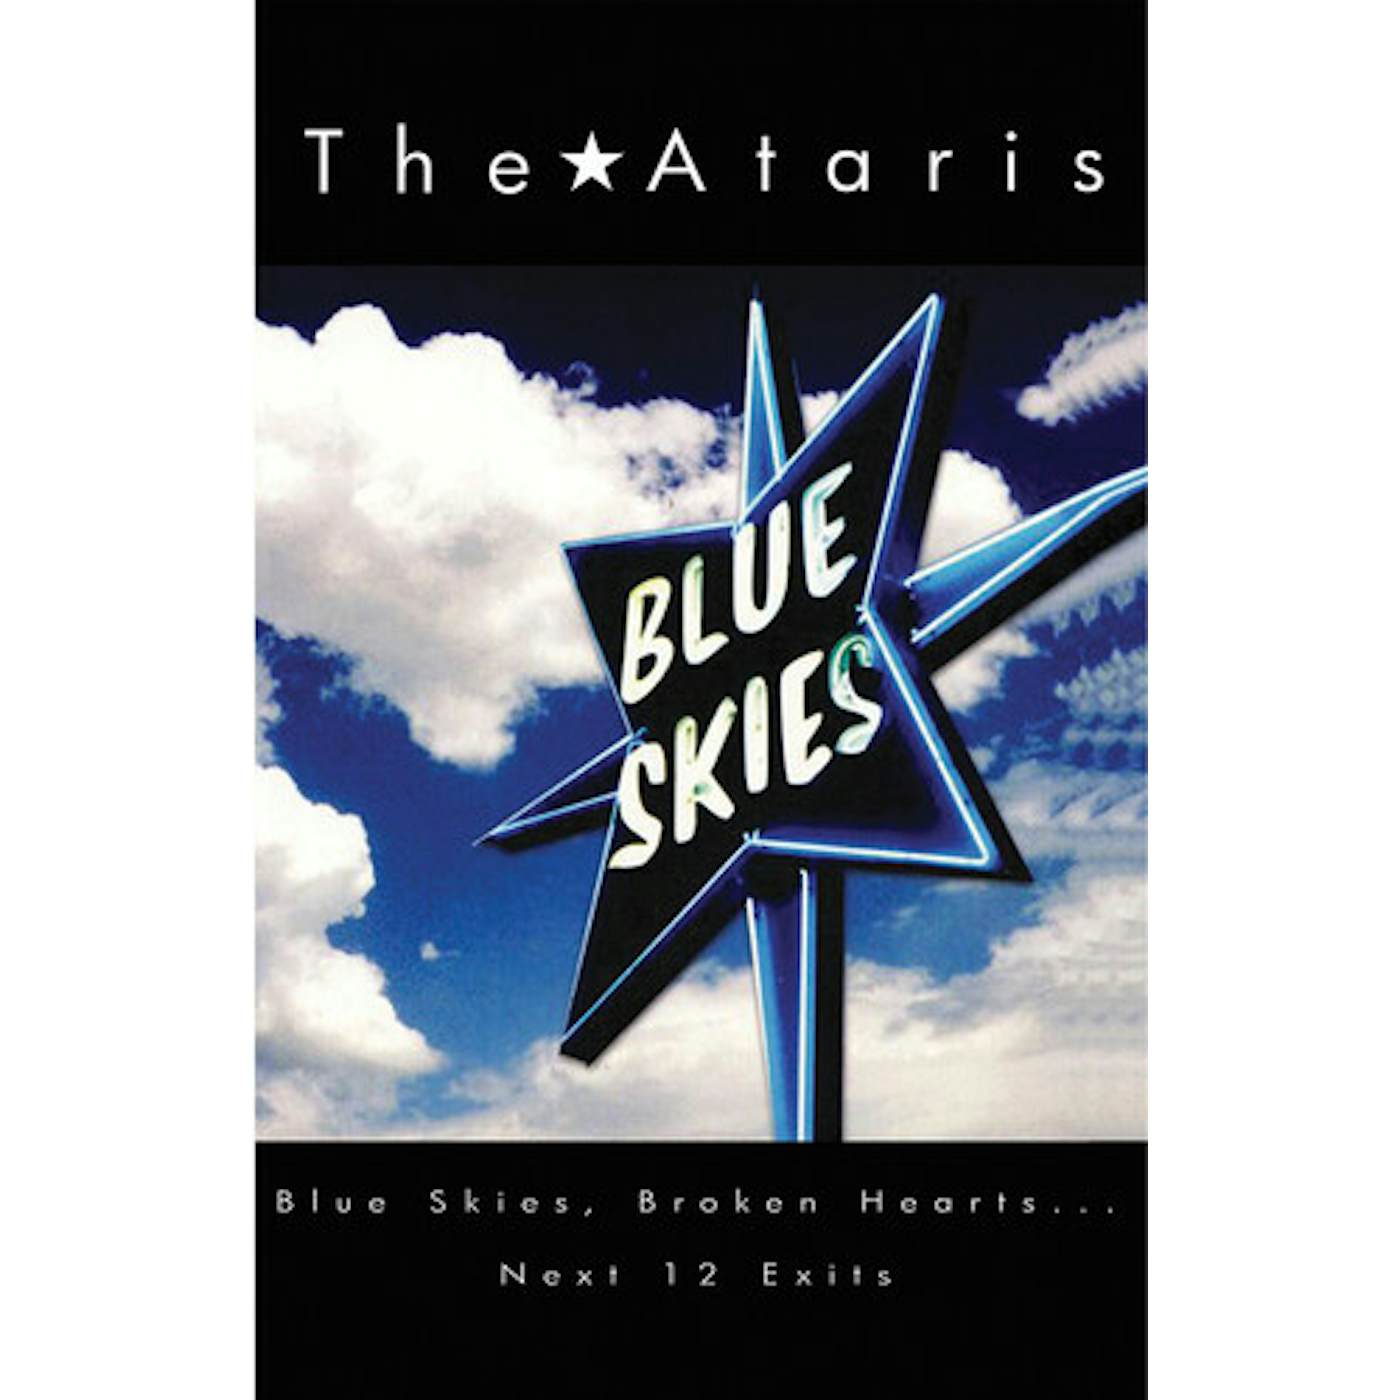 The Ataris BLUE SKIES BROKEN HEARTS NEXT 12 EXITS (DIG) CD